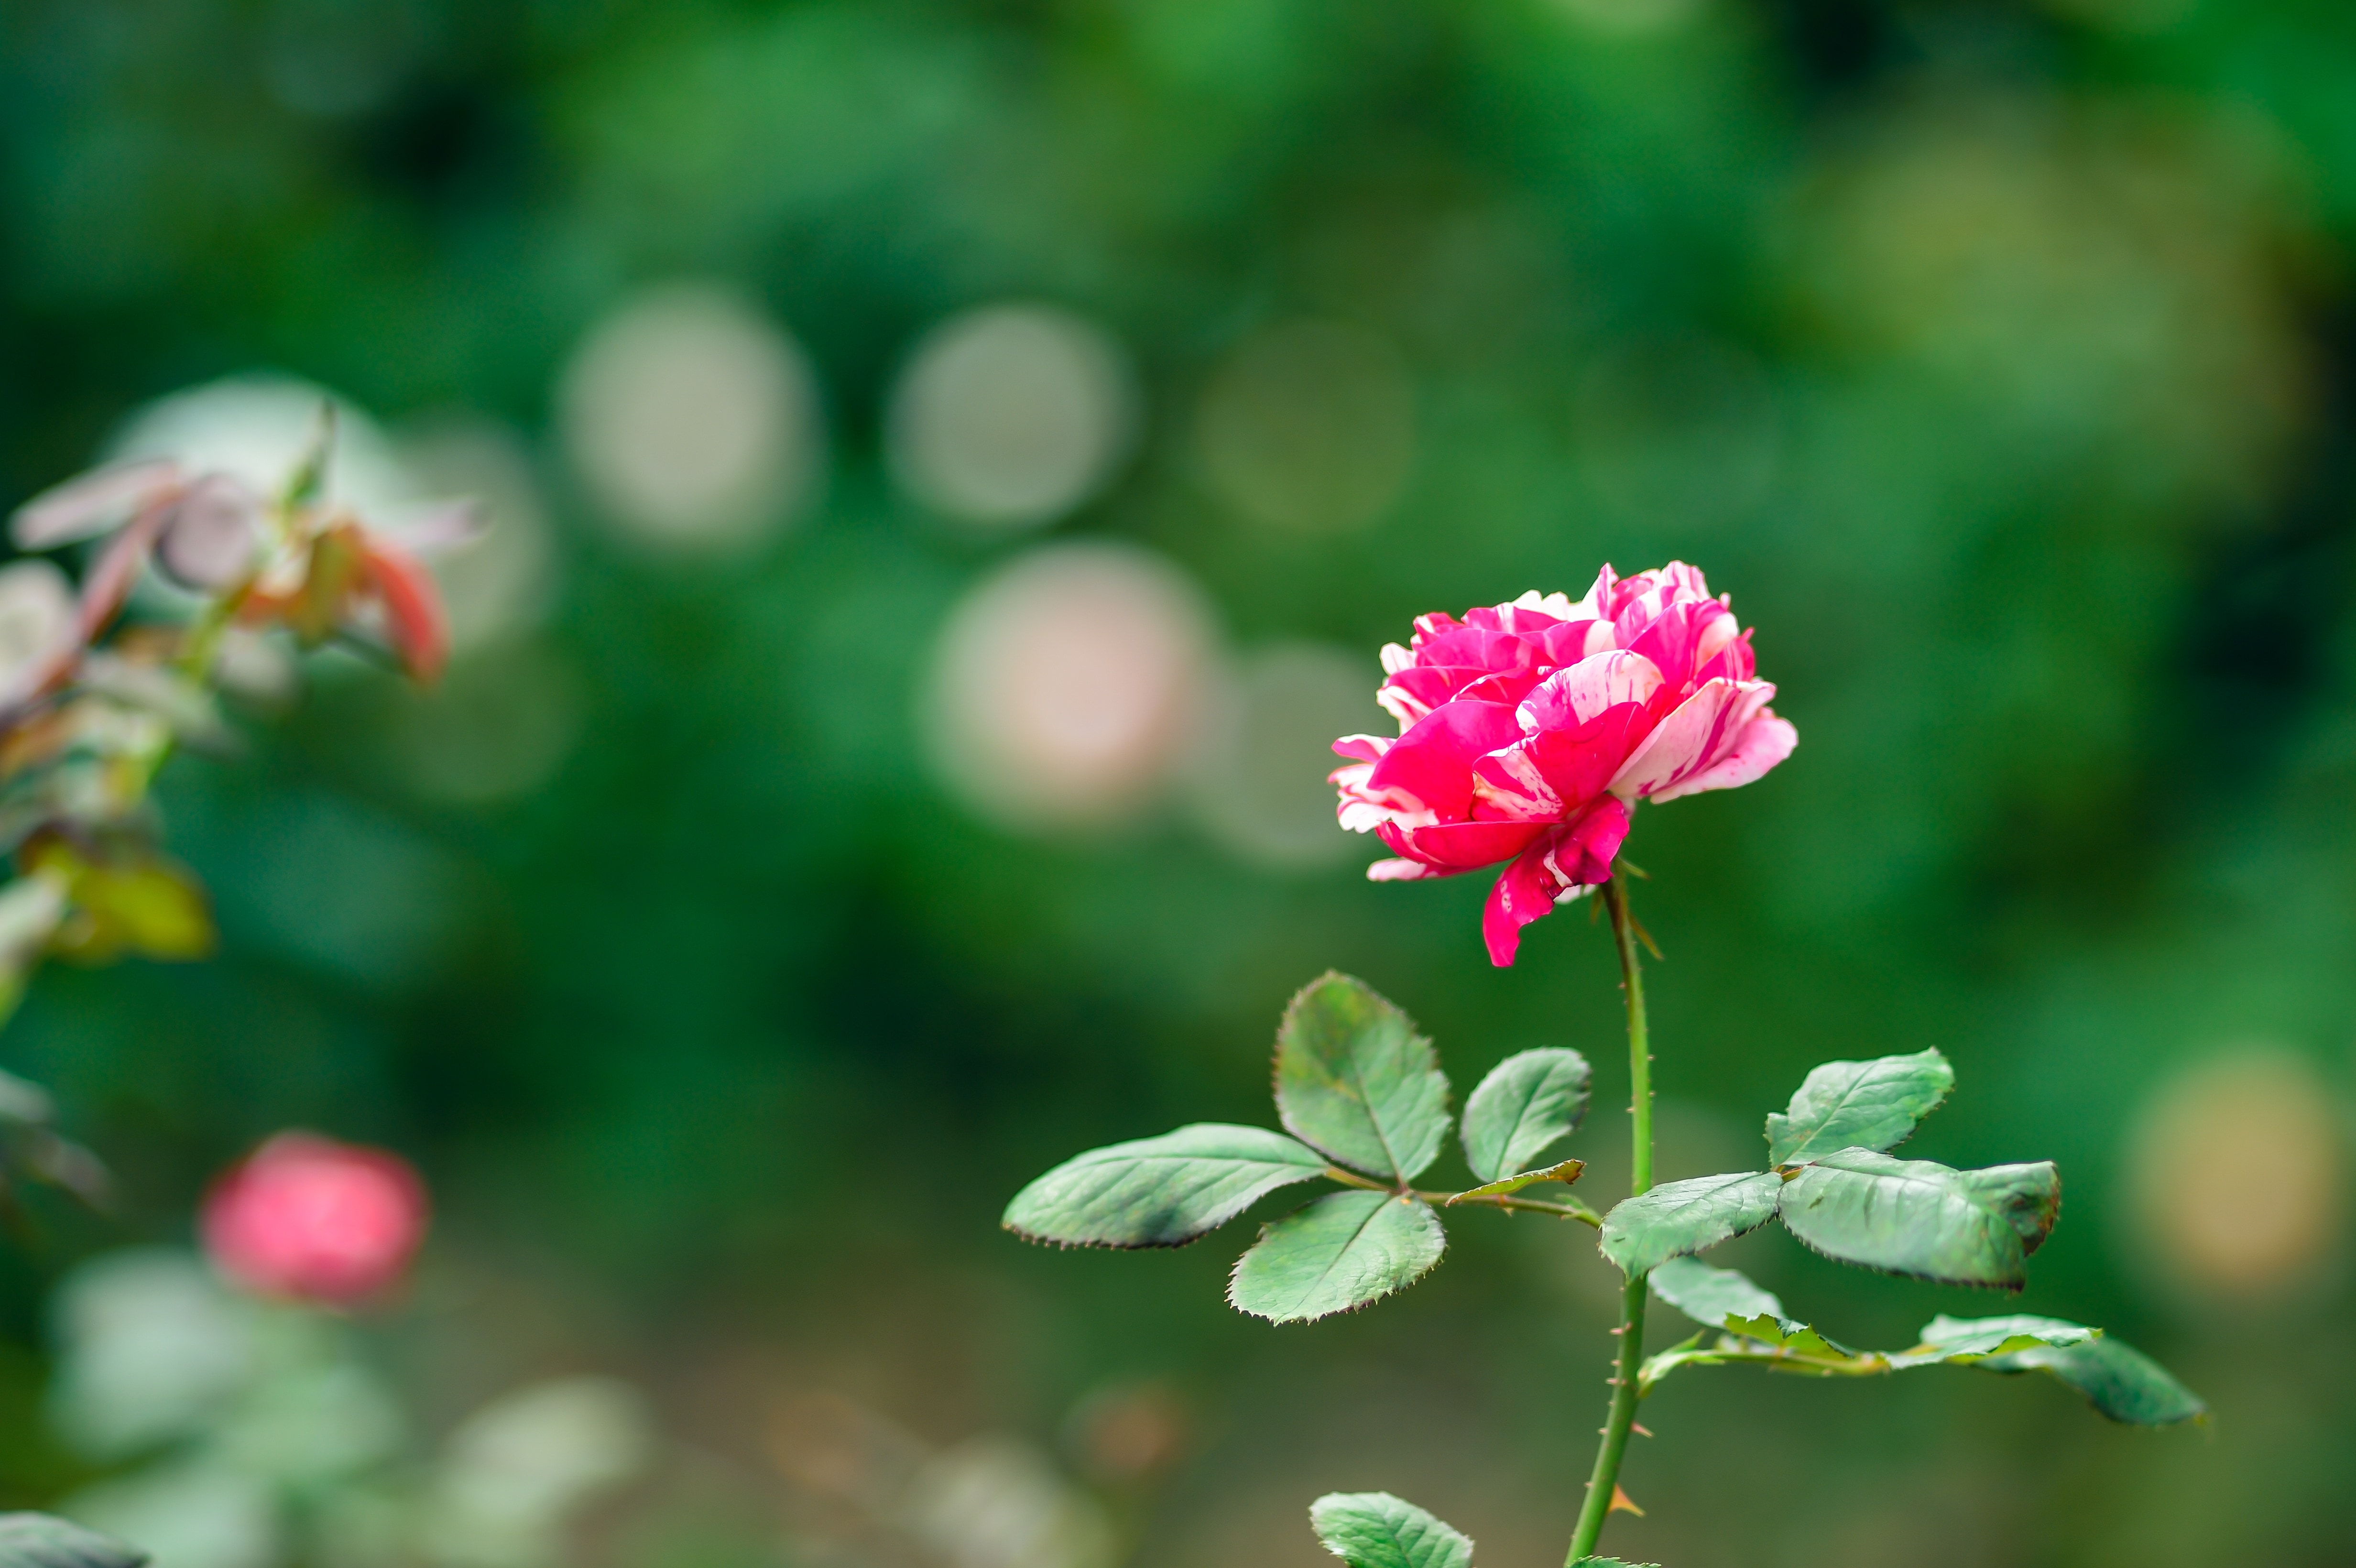 Rose, Rose Garden, Plant, Natural, flower, nature